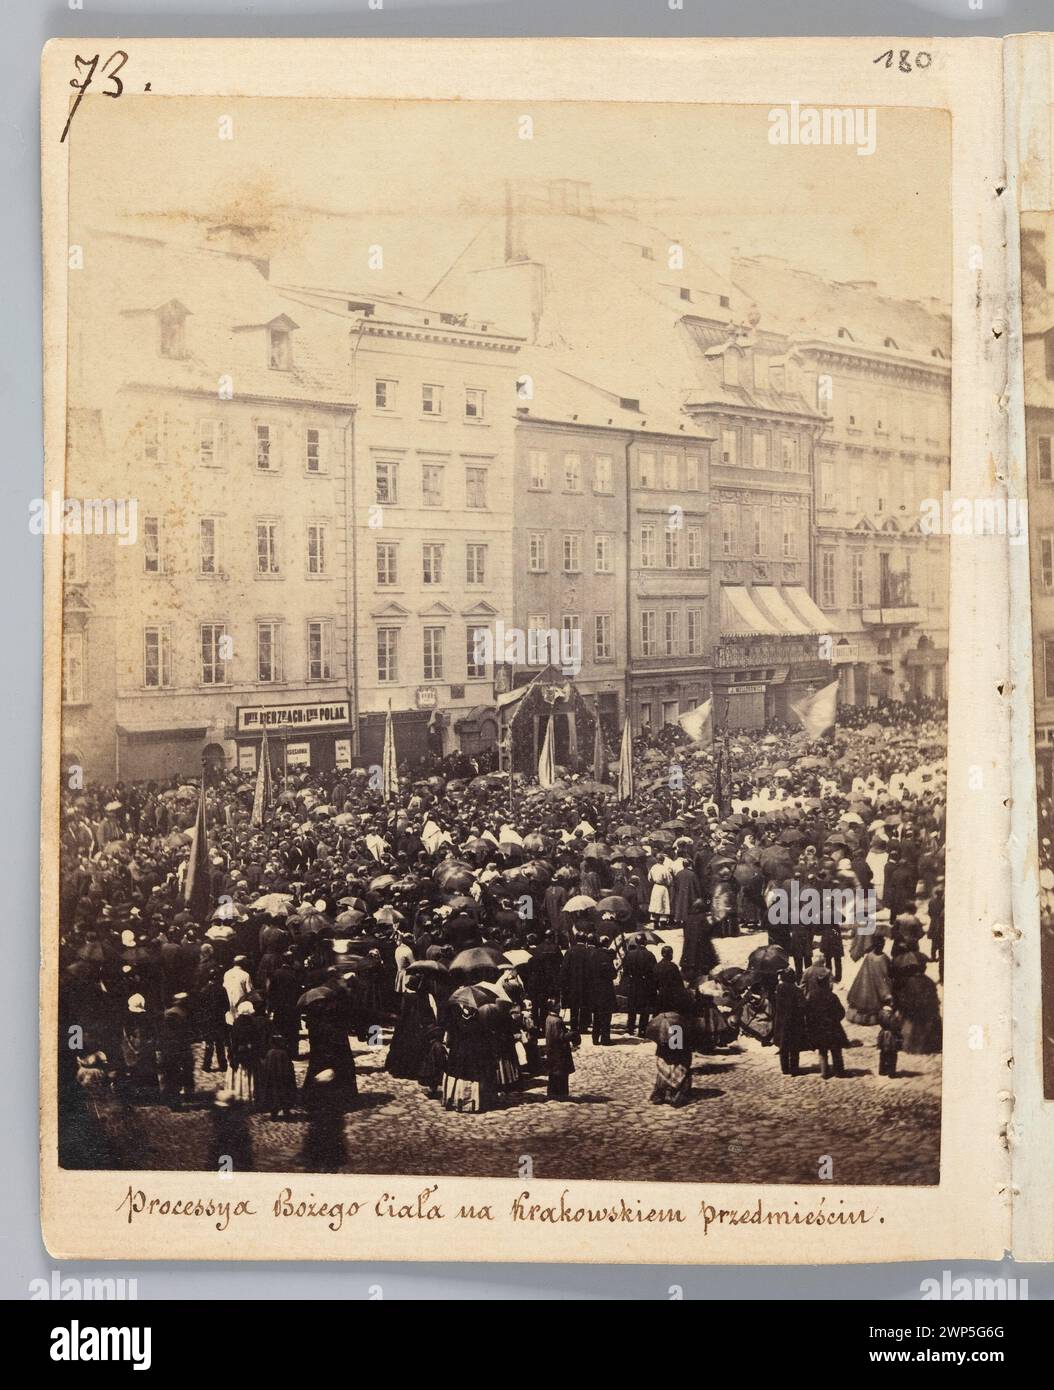 Varsavia. "Processi della CIA, nei sobborghi di Cracovia" (vista dal balcone della casa di proprietà di Malcza); Beyer, Karol (1818-1877); 4.06.1863 (1859-00-00-1863-00-00-00); Corpus Christi (festività), Krakowskie Przedmieście (Varsavia - via), Méyet, Leopold (1850-1912) - collezione, Varsavia (voivoivodato di Masovian), Dar (provenienza) Foto Stock